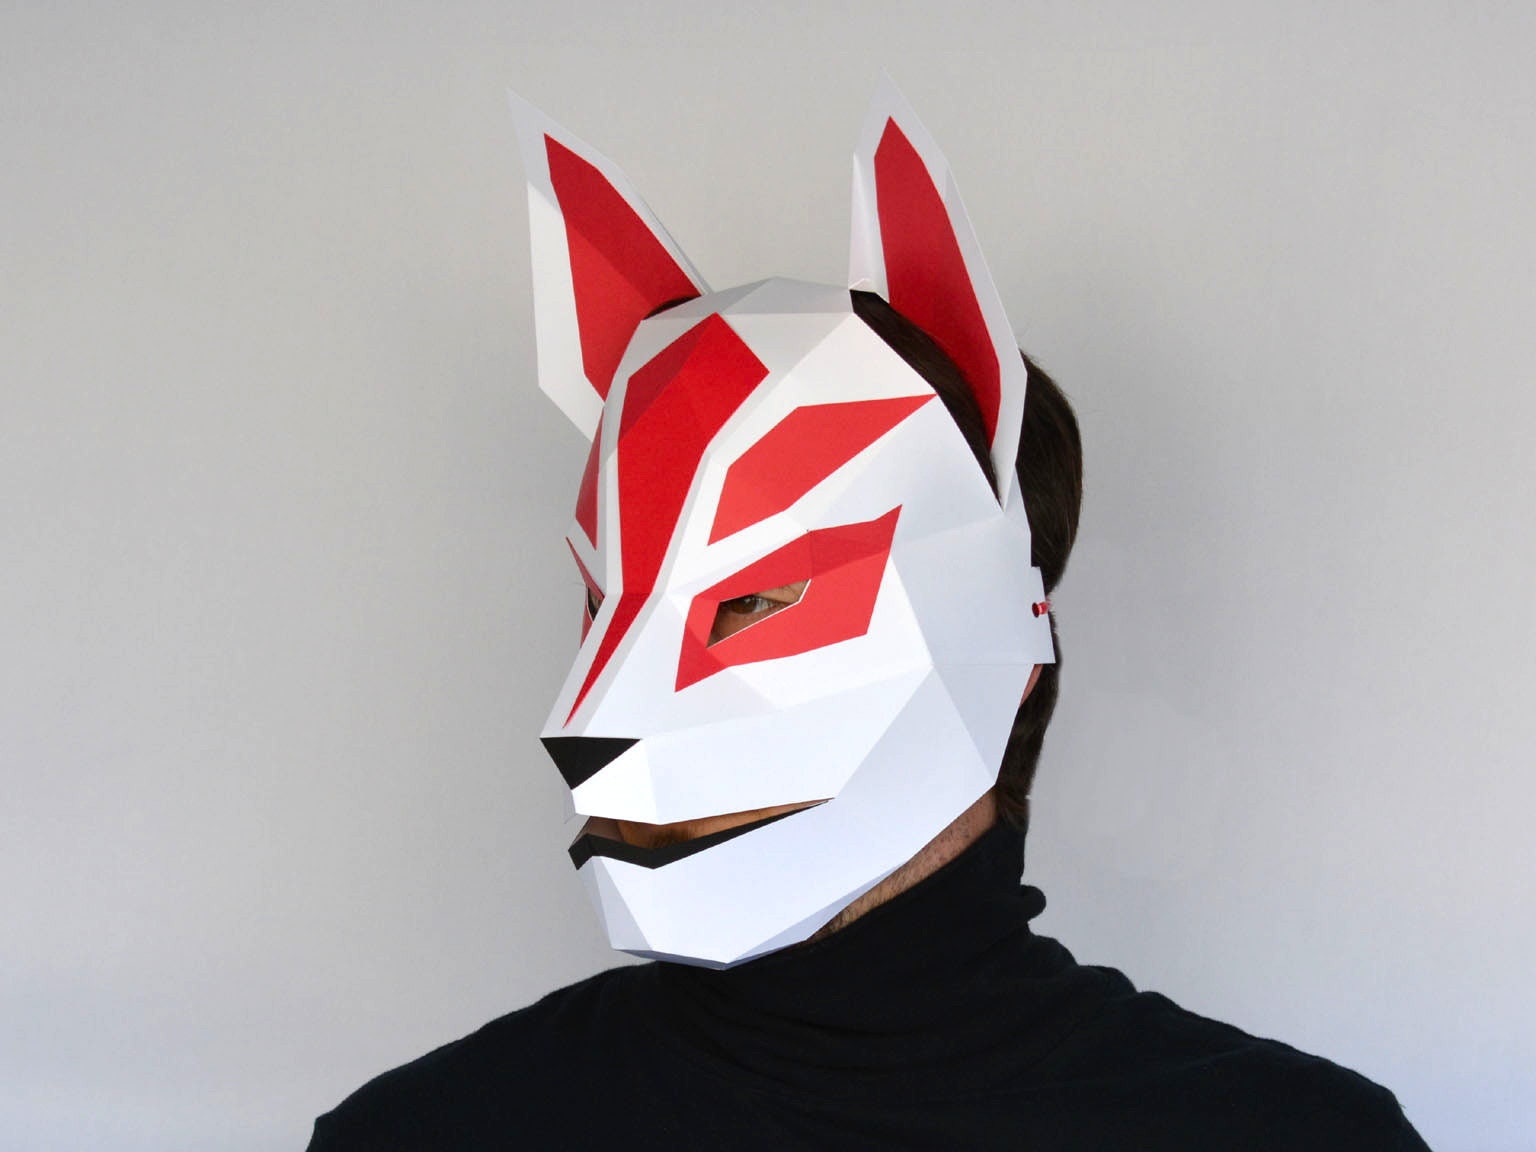 Kitsune Mask Pattern